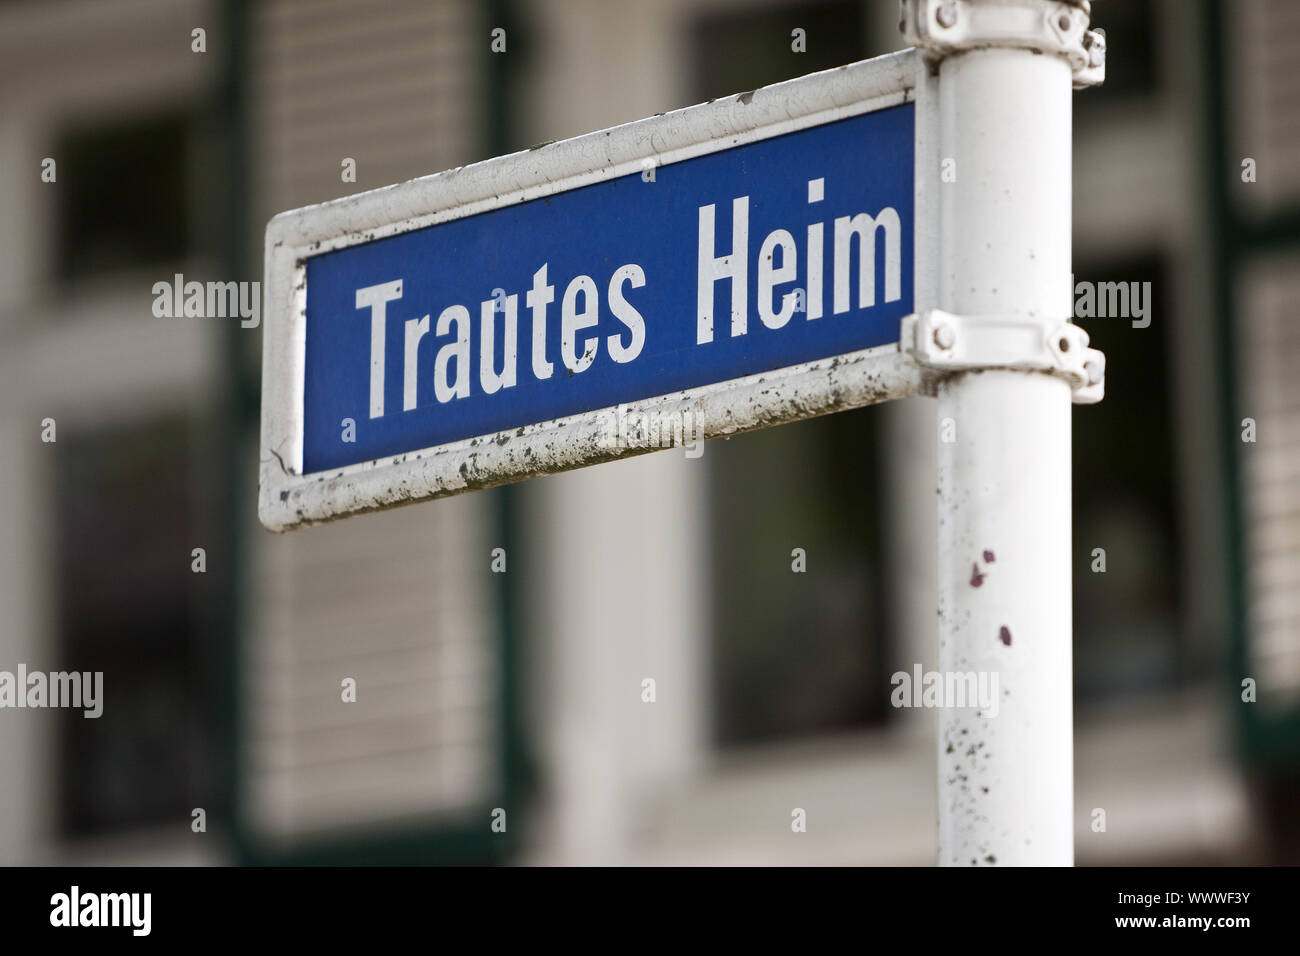 Straße name Trautes Heim - sweet home, Siedlung Magarethenhoehe, Essen, Deutschland, Europa Stockfoto